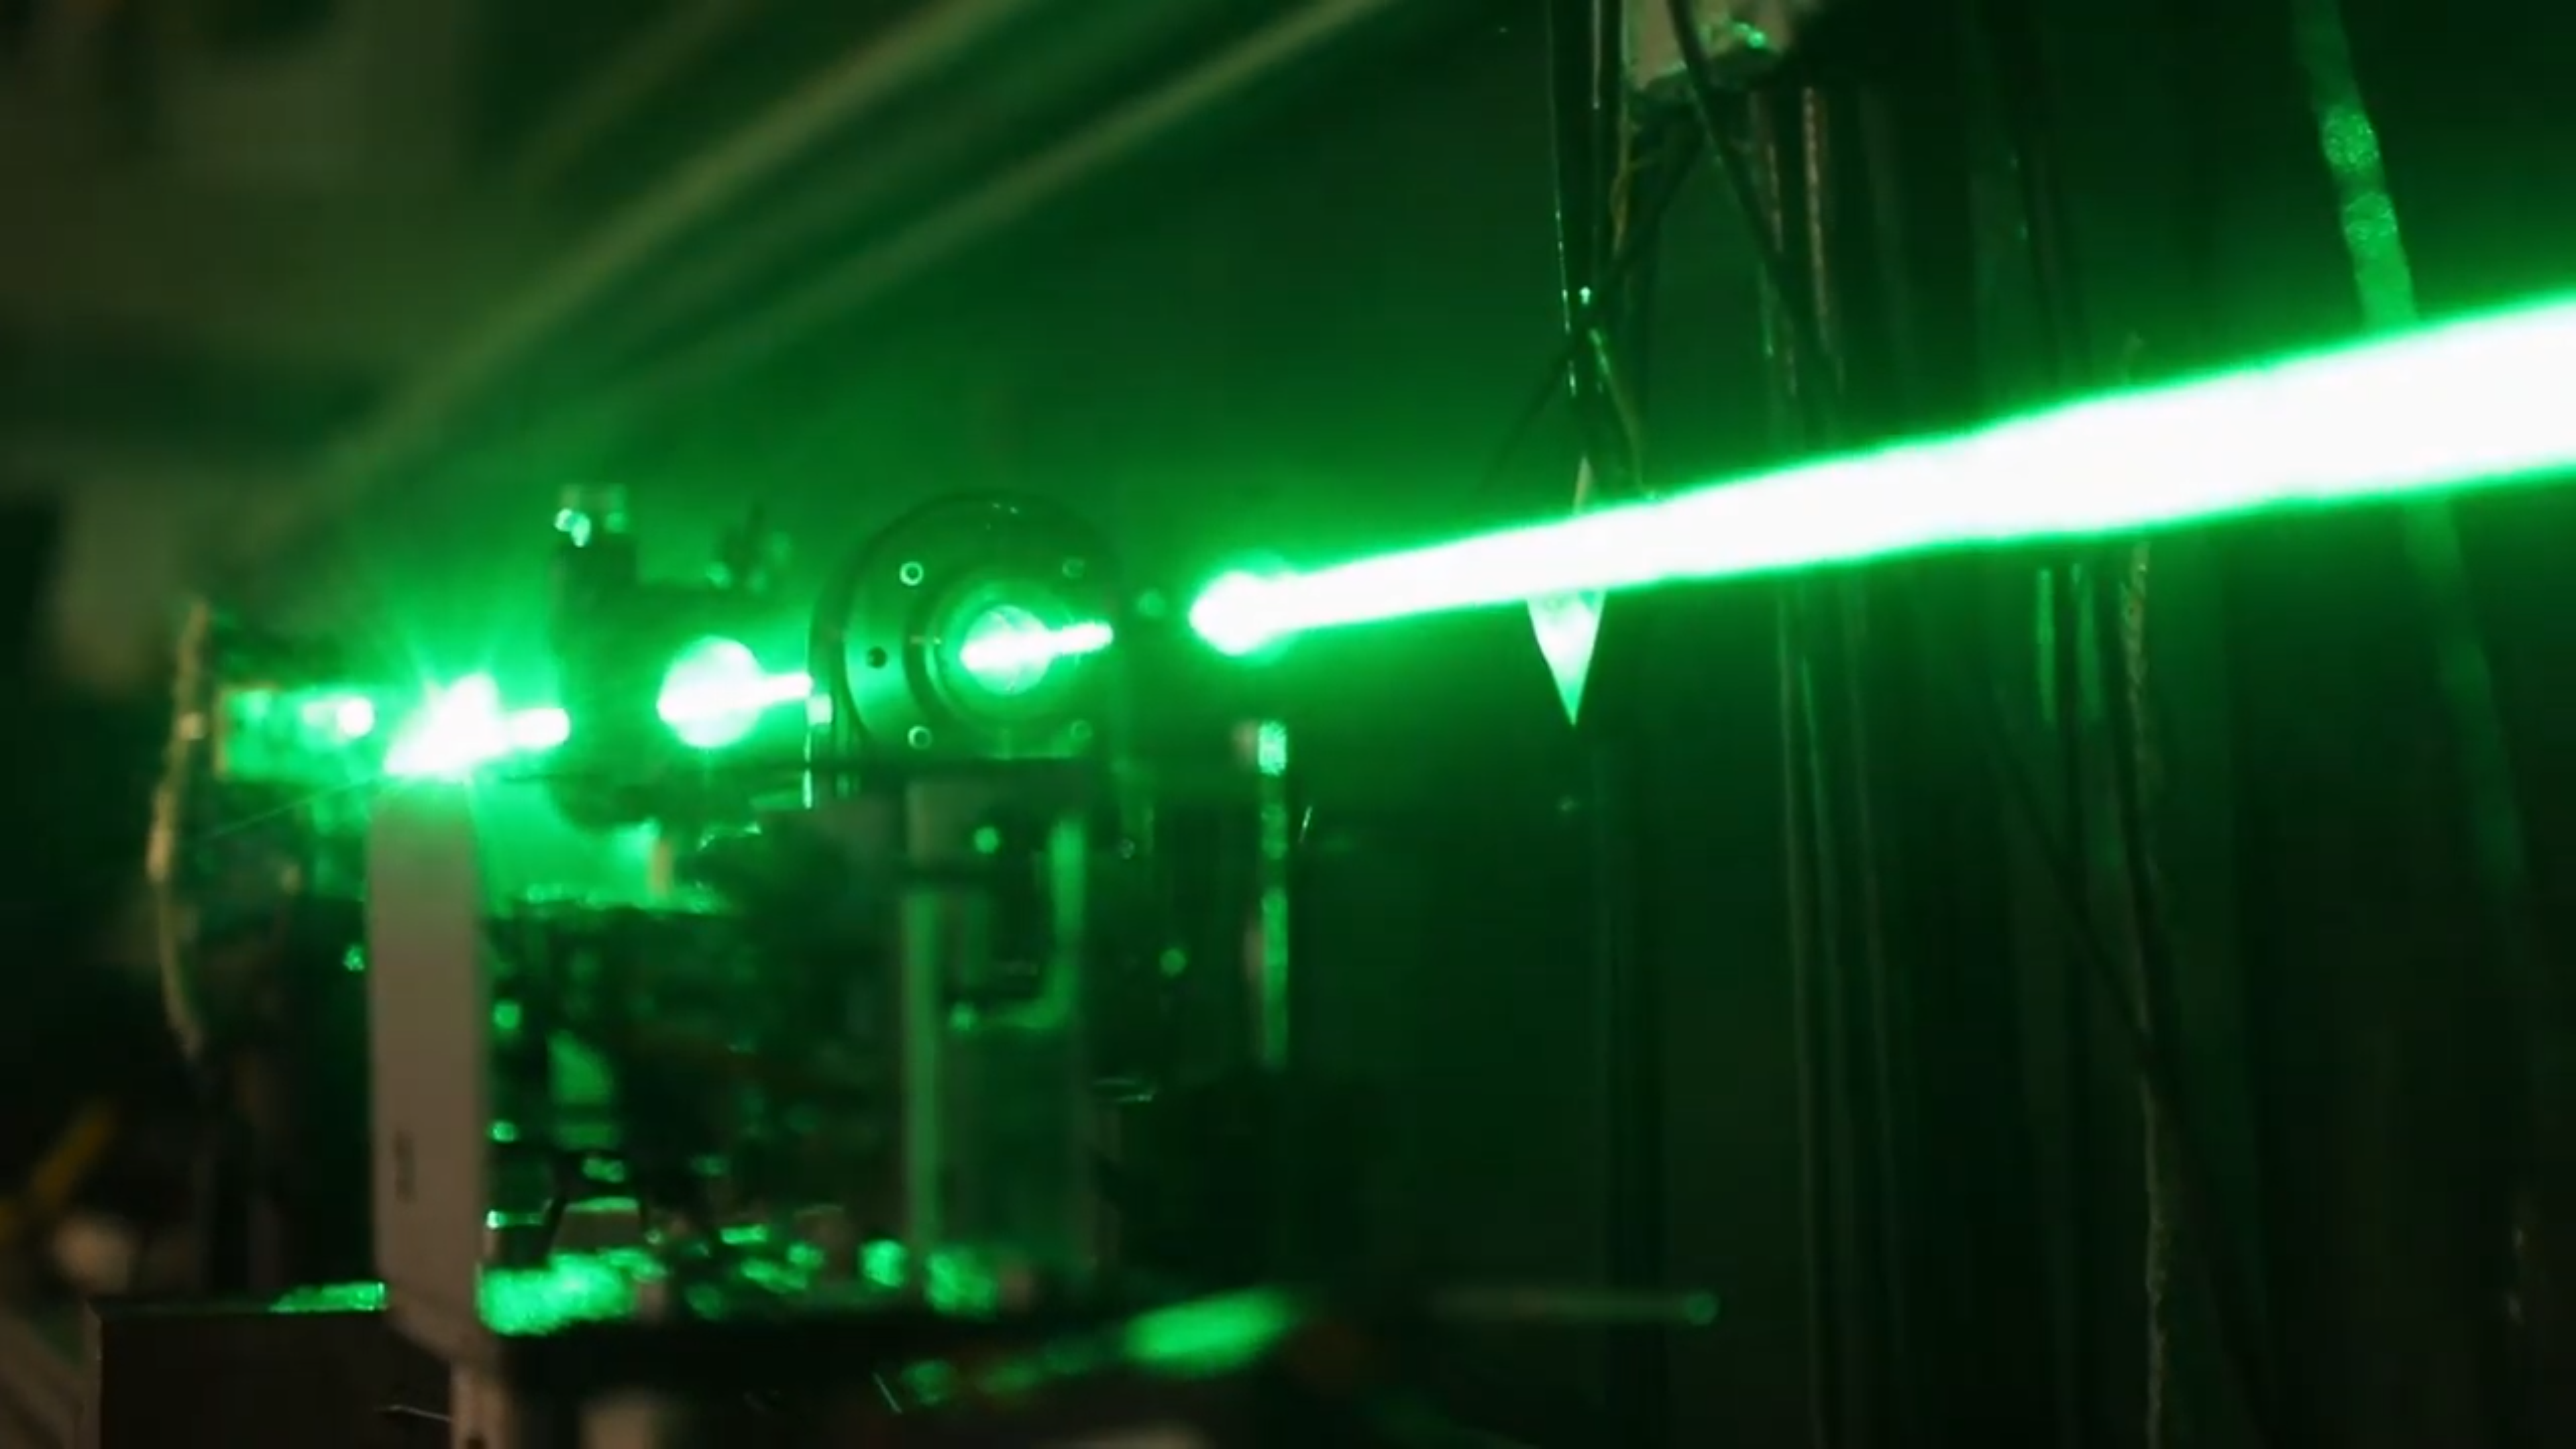 Части лазерной системы лазер дихроичное зеркало фазовая пластинка и ячейка Поккельса. Предоставлено В. Каминским